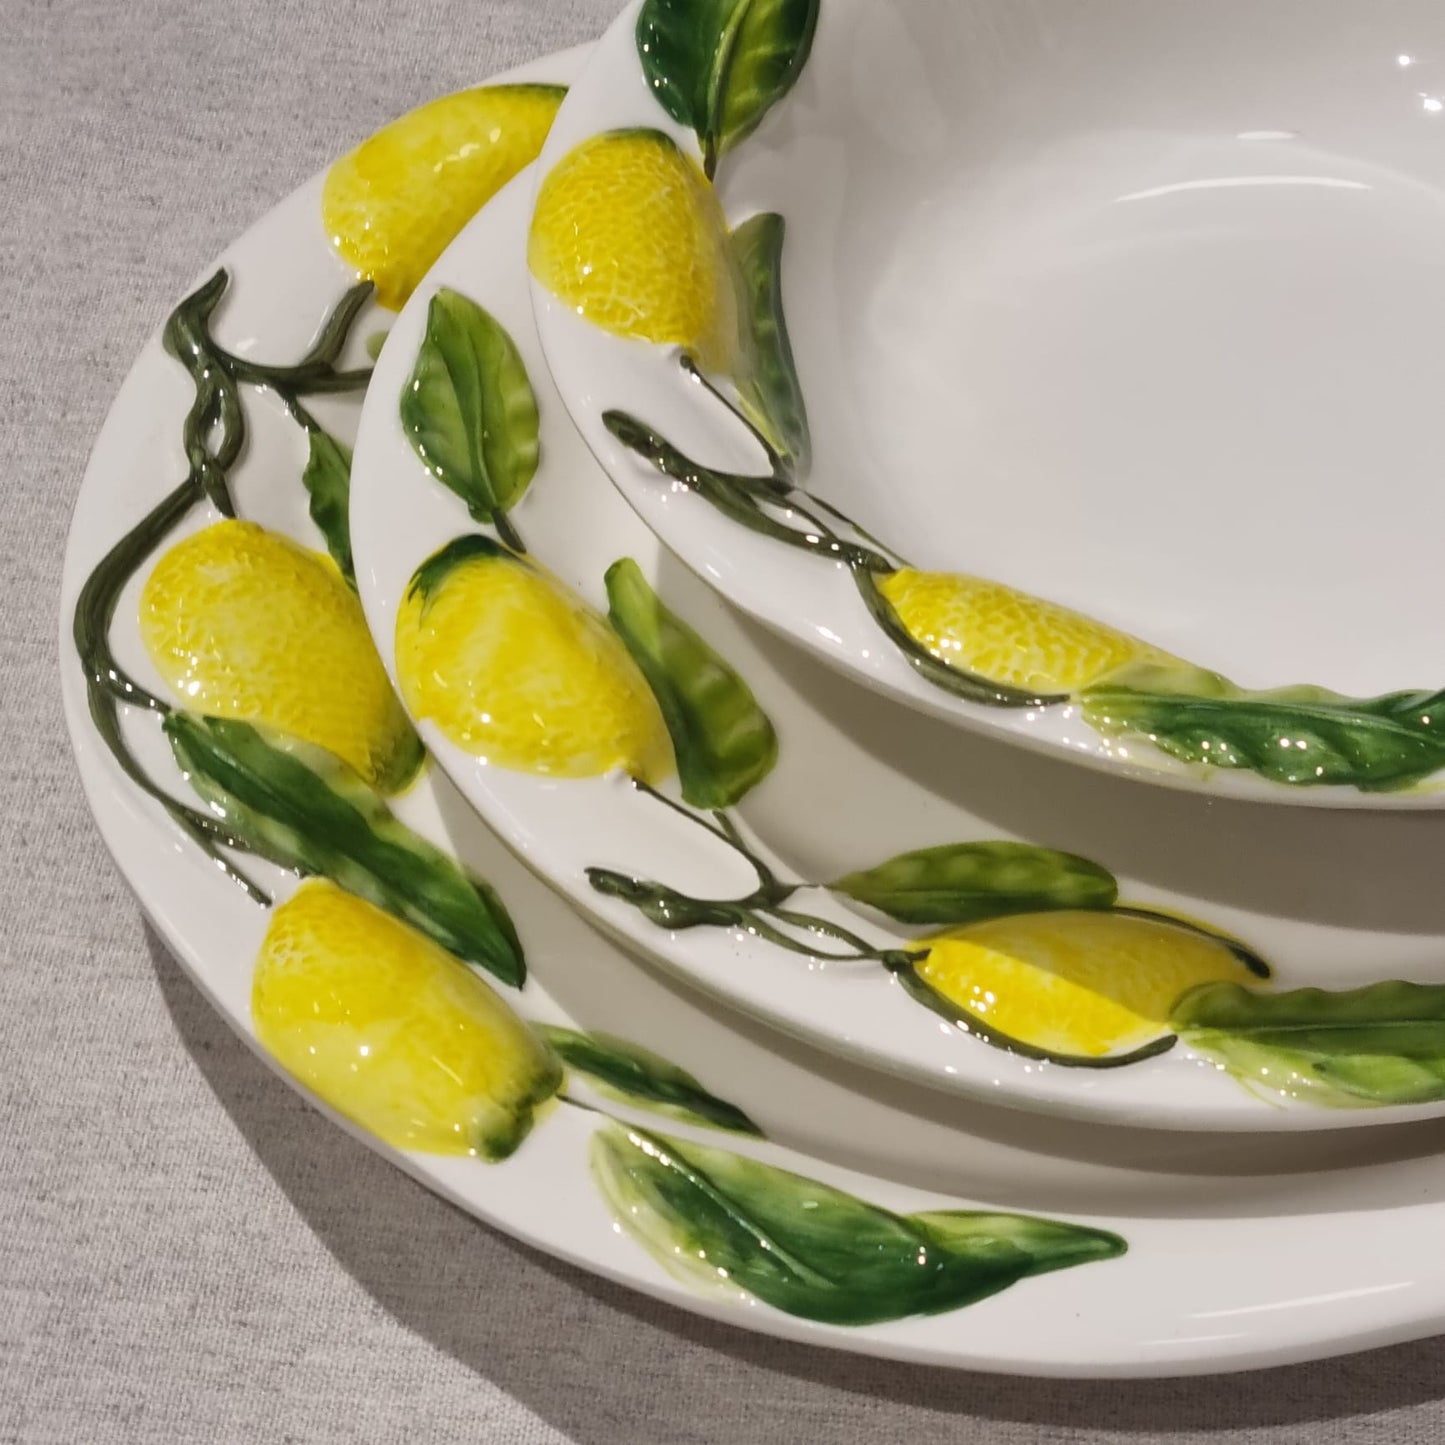 Srvējamais šķīvis ar citronu dekoru, Itāļu keramika, 30 cm